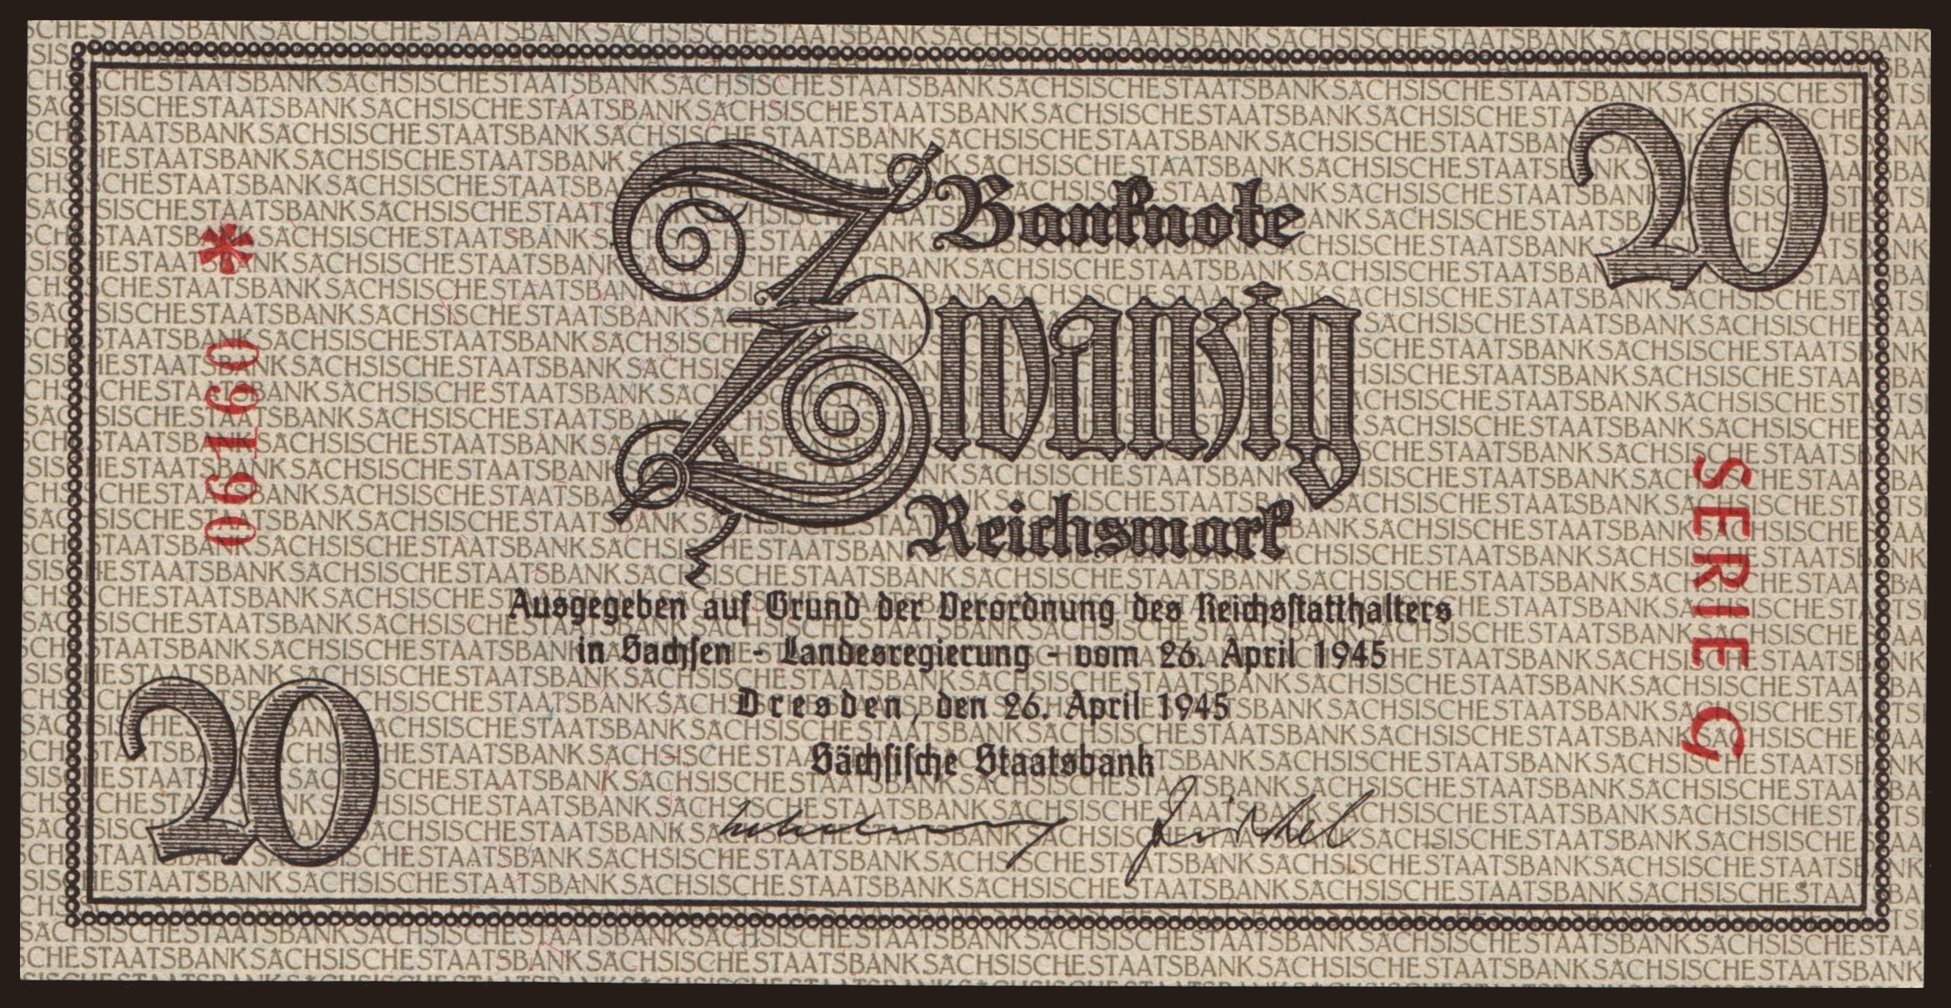 Sächsische Staatsbank, 20 Reichsmark, 1945